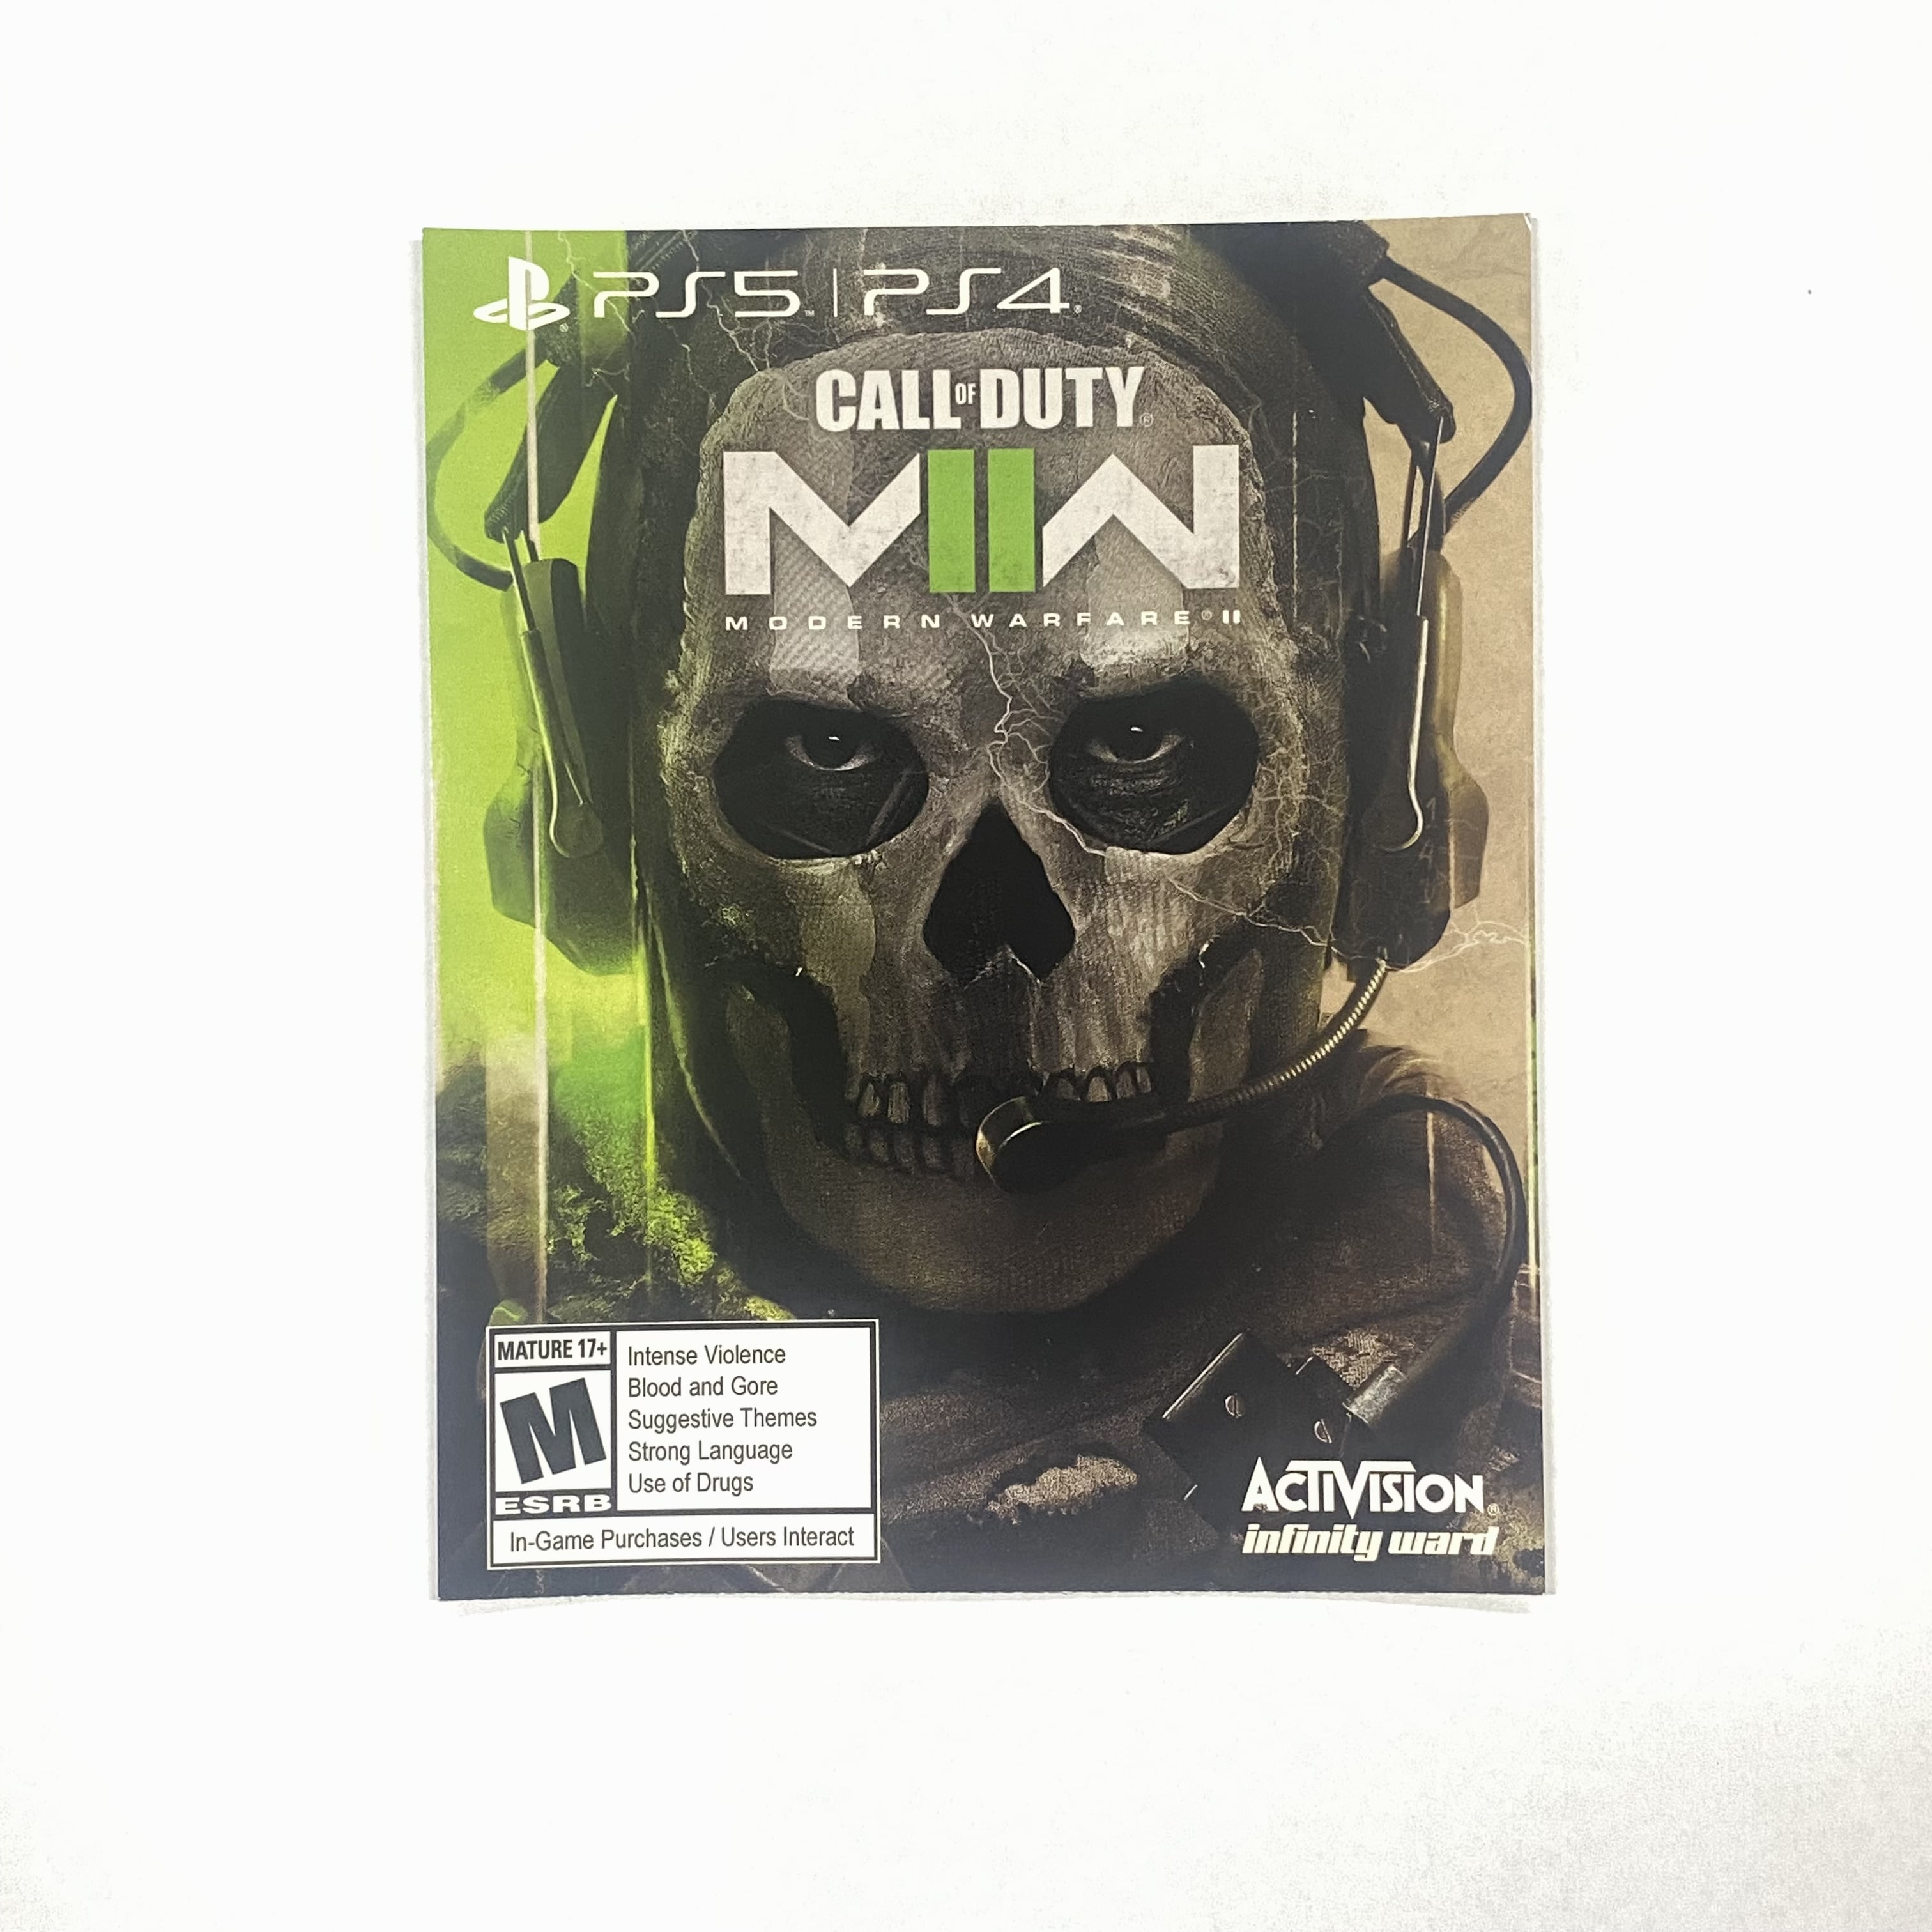  Call of Duty Modern Warfare 2 [ Cross-Gen Edition